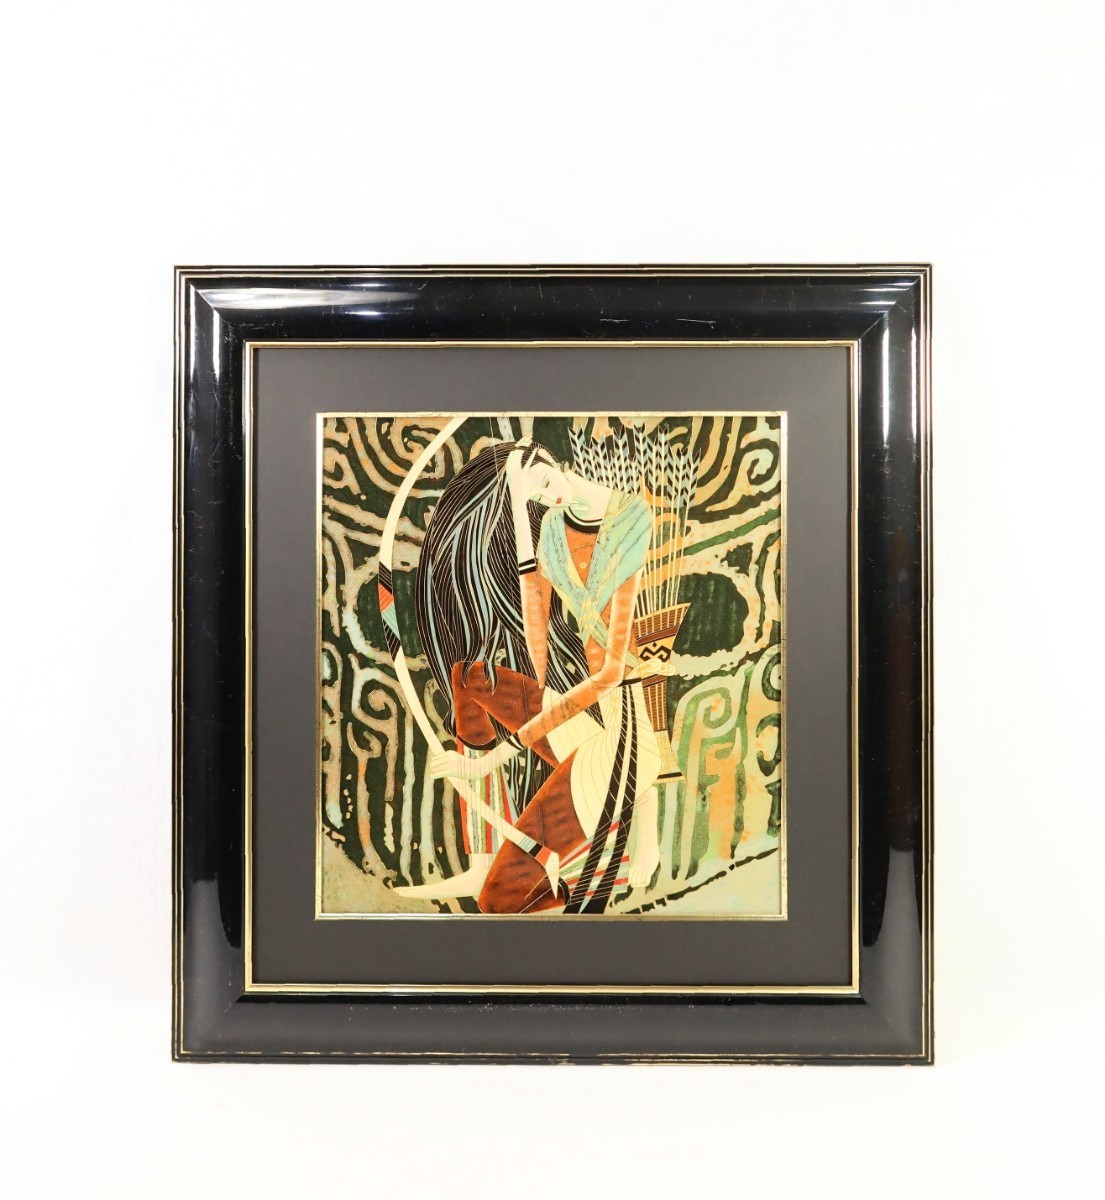 ティン・シャオカン 複製「アイズ・オブ・プレイ」画寸38.5×41.5cm 丁紹光 天と地と人の和合 華麗な色彩と流麗な線描 東洋的な神秘性 8254